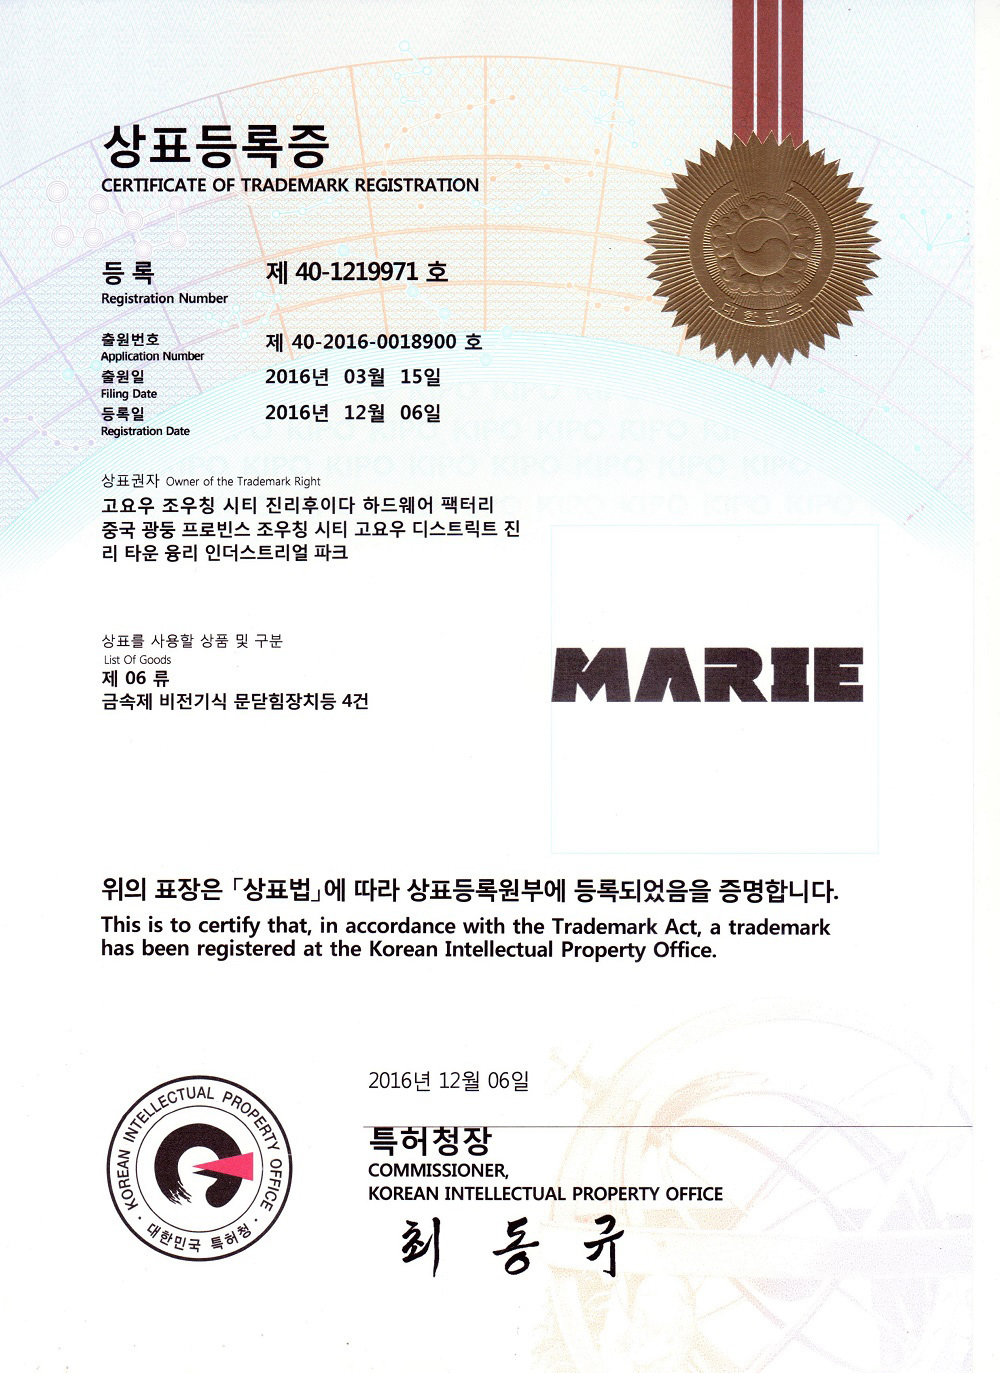 MARIE Korea Trademark Certificate